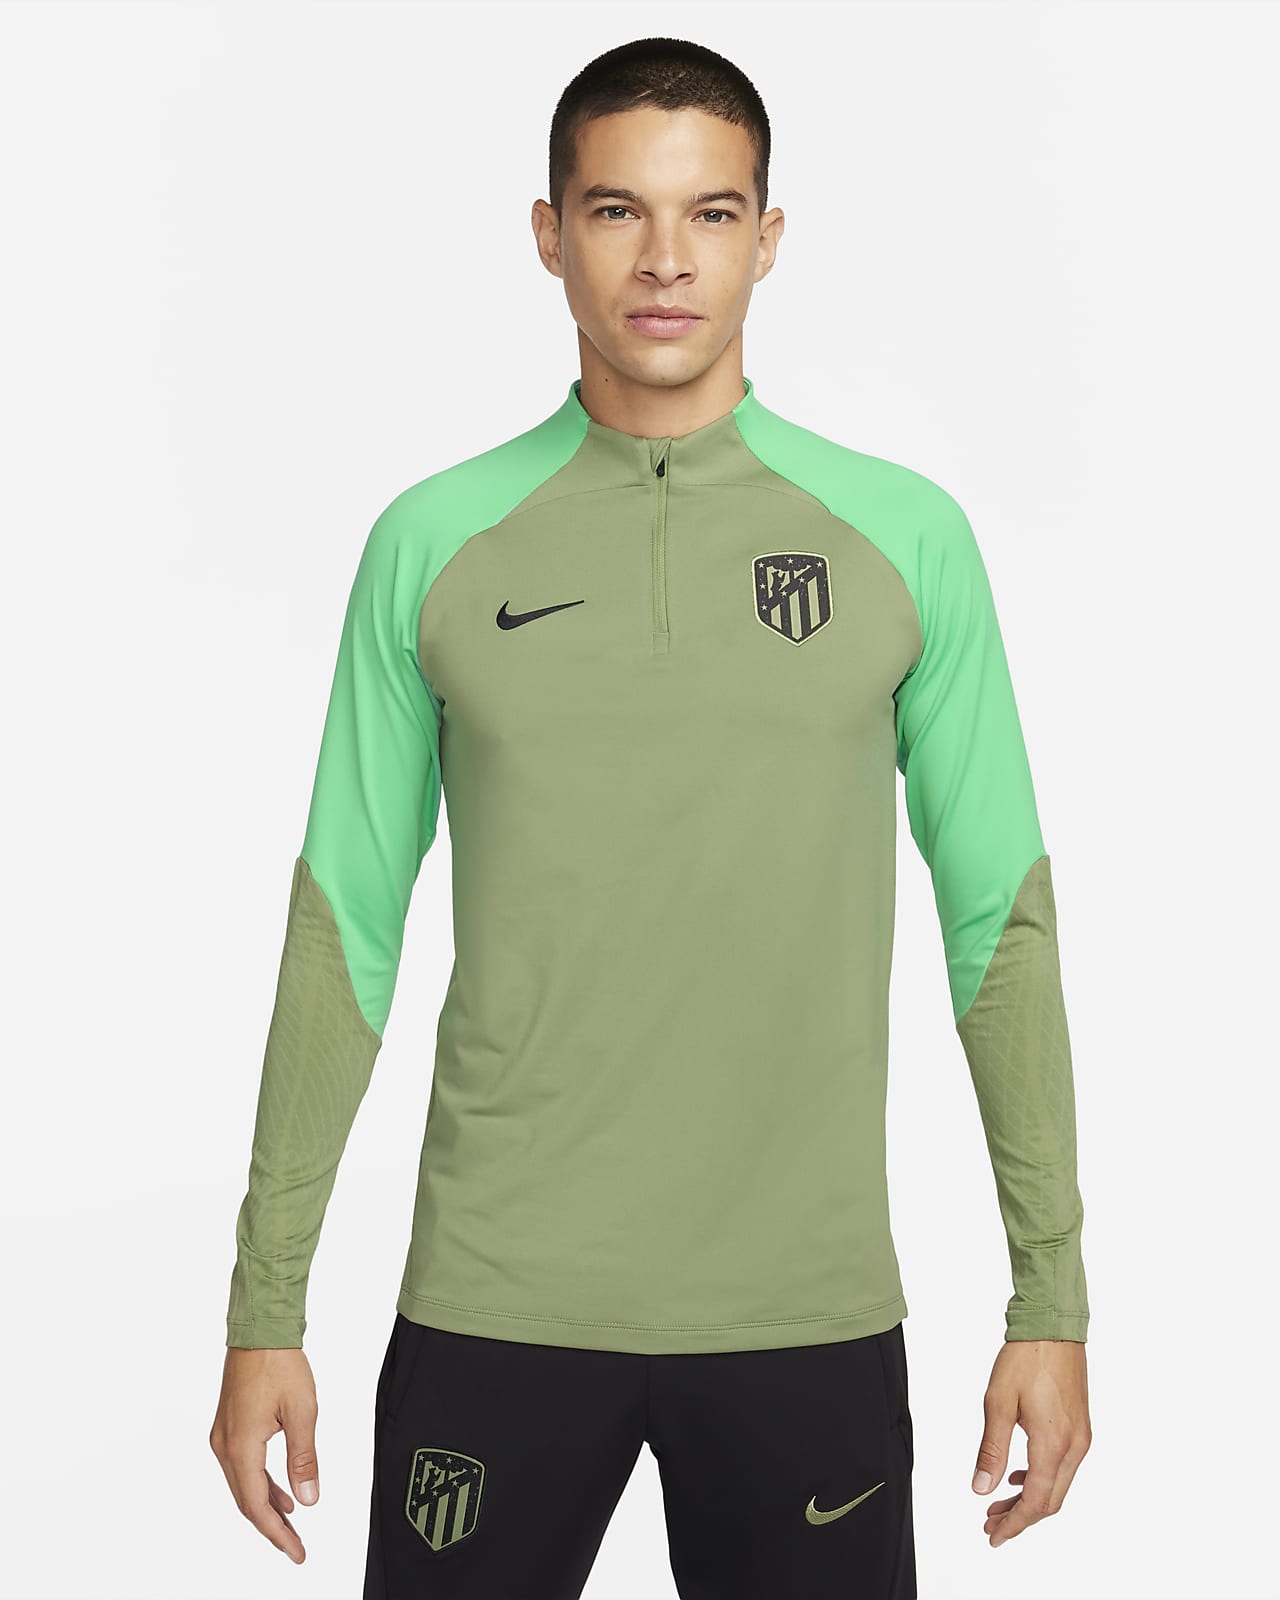 Ανδρική πλεκτή ποδοσφαιρική μπλούζα προπόνησης Nike Dri-FIT Ατλέτικο Μαδρίτης Strike